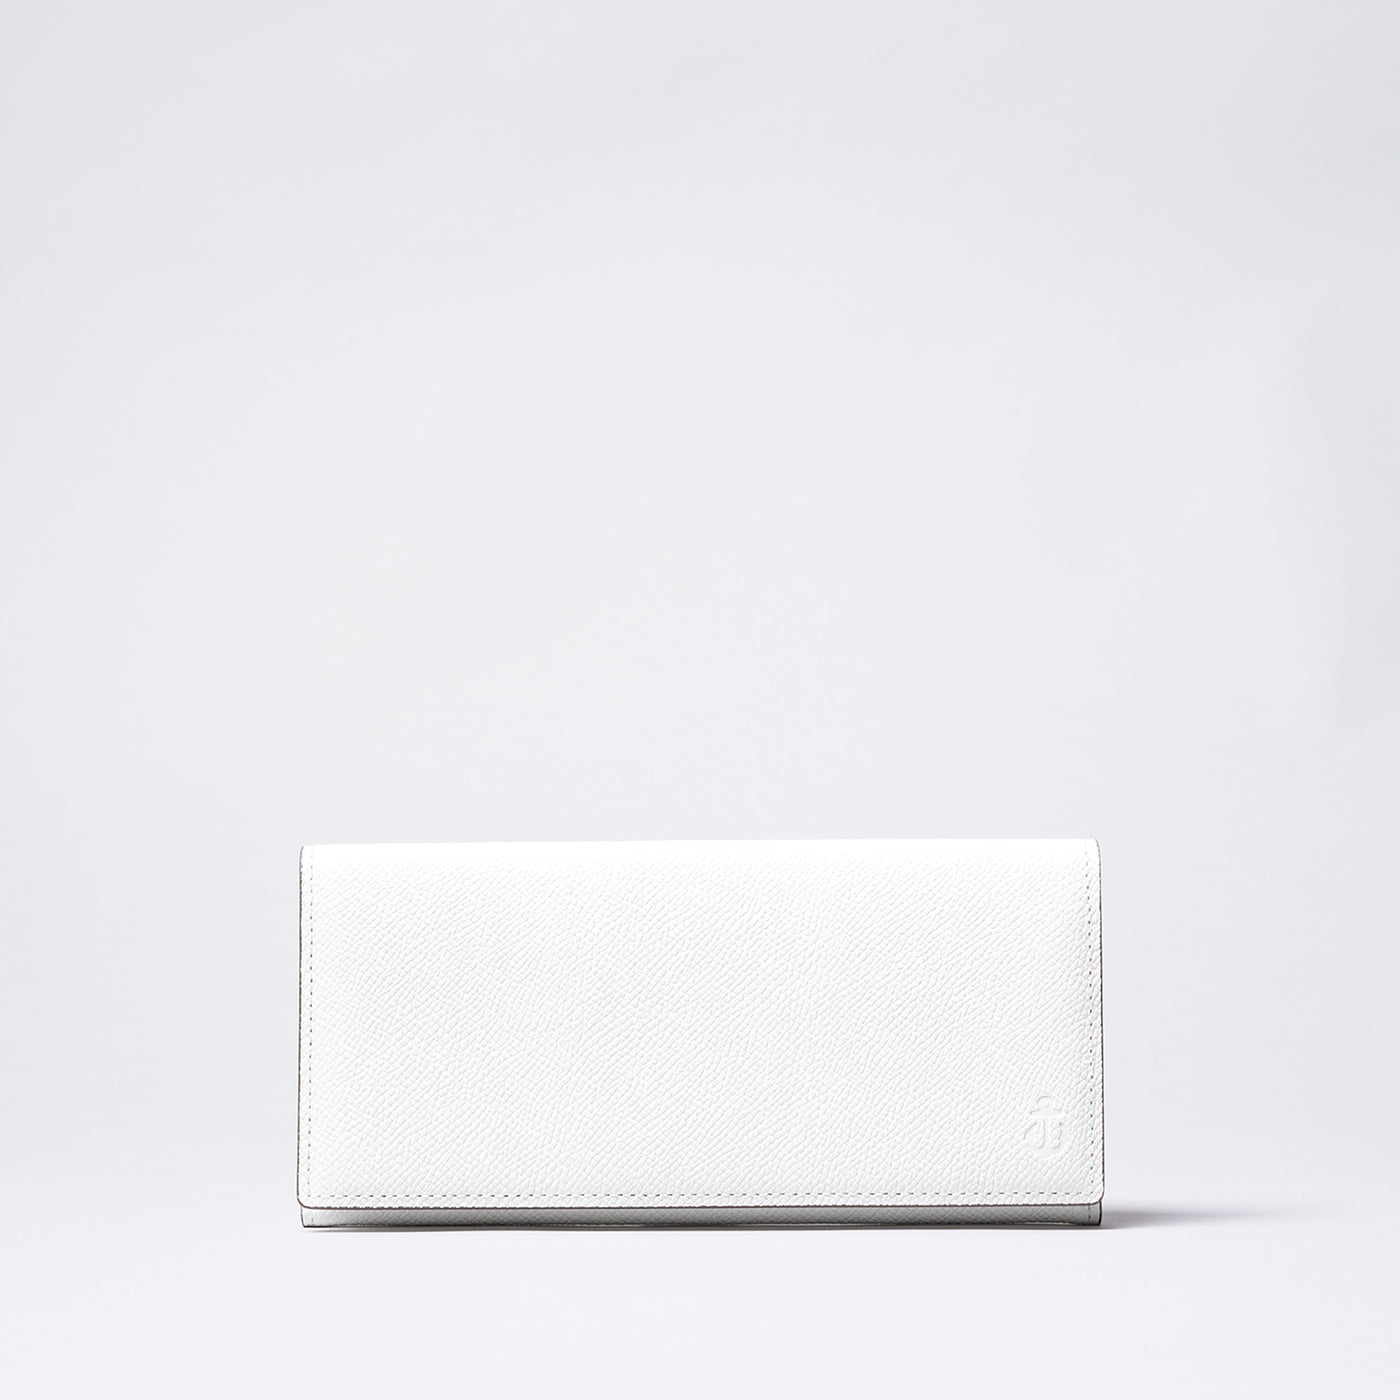 <kiichi> Shade Series Long Wallet (Flap Closure) / Yellow